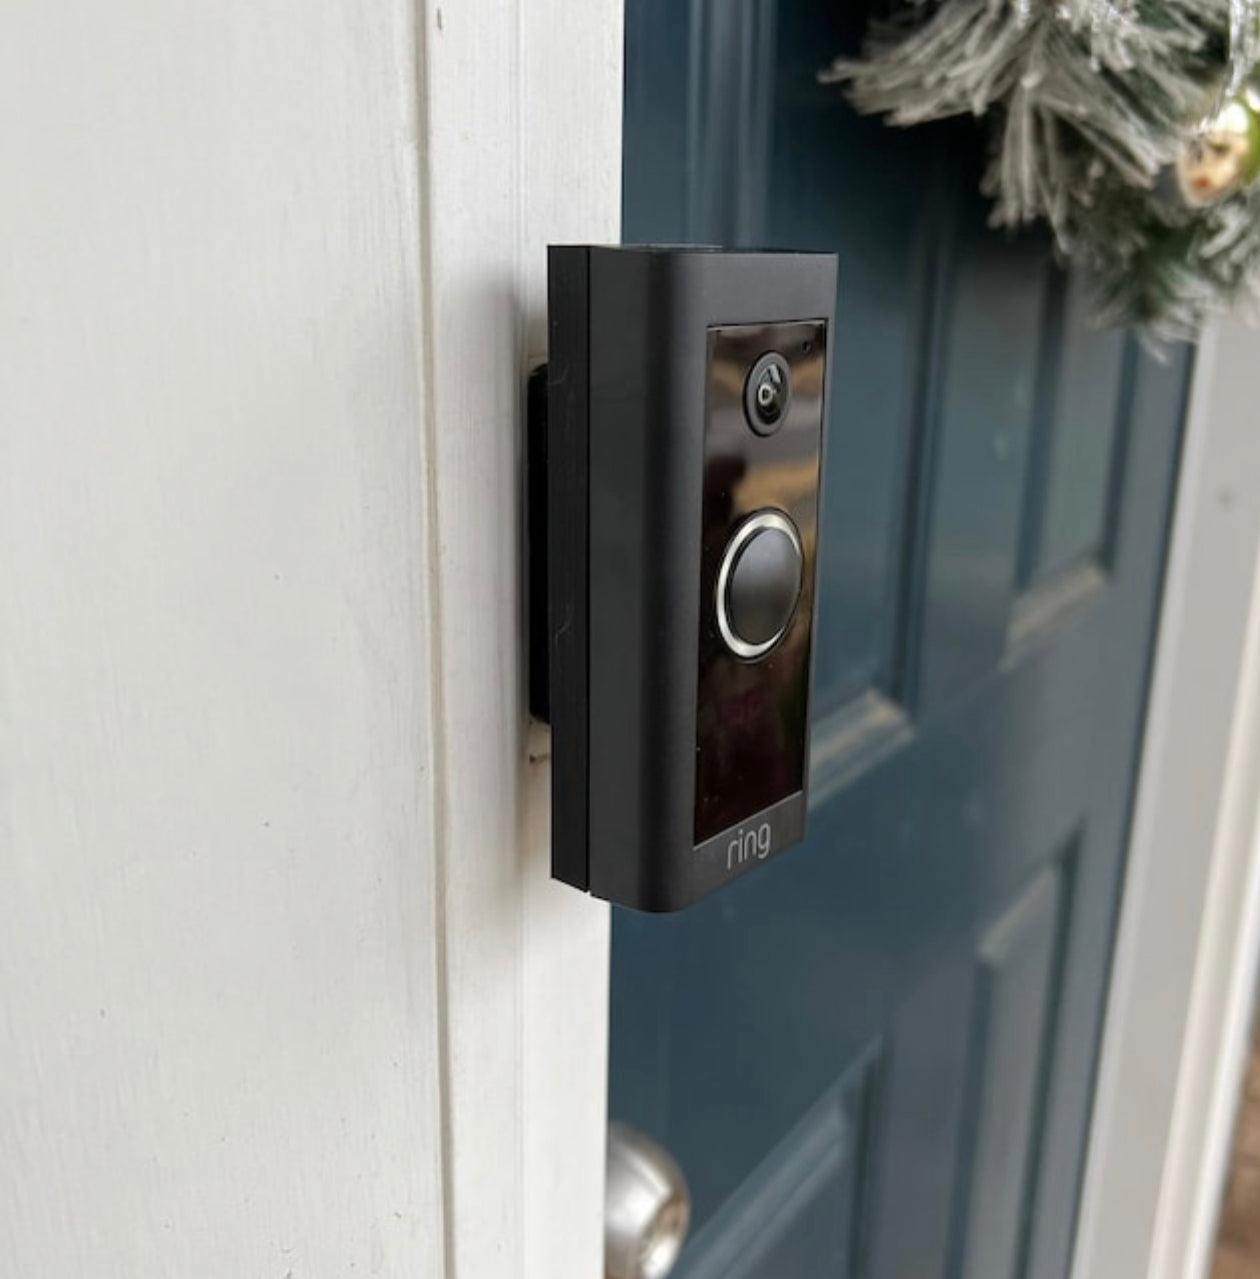 Kuna Store - DualCam Video Doorbell